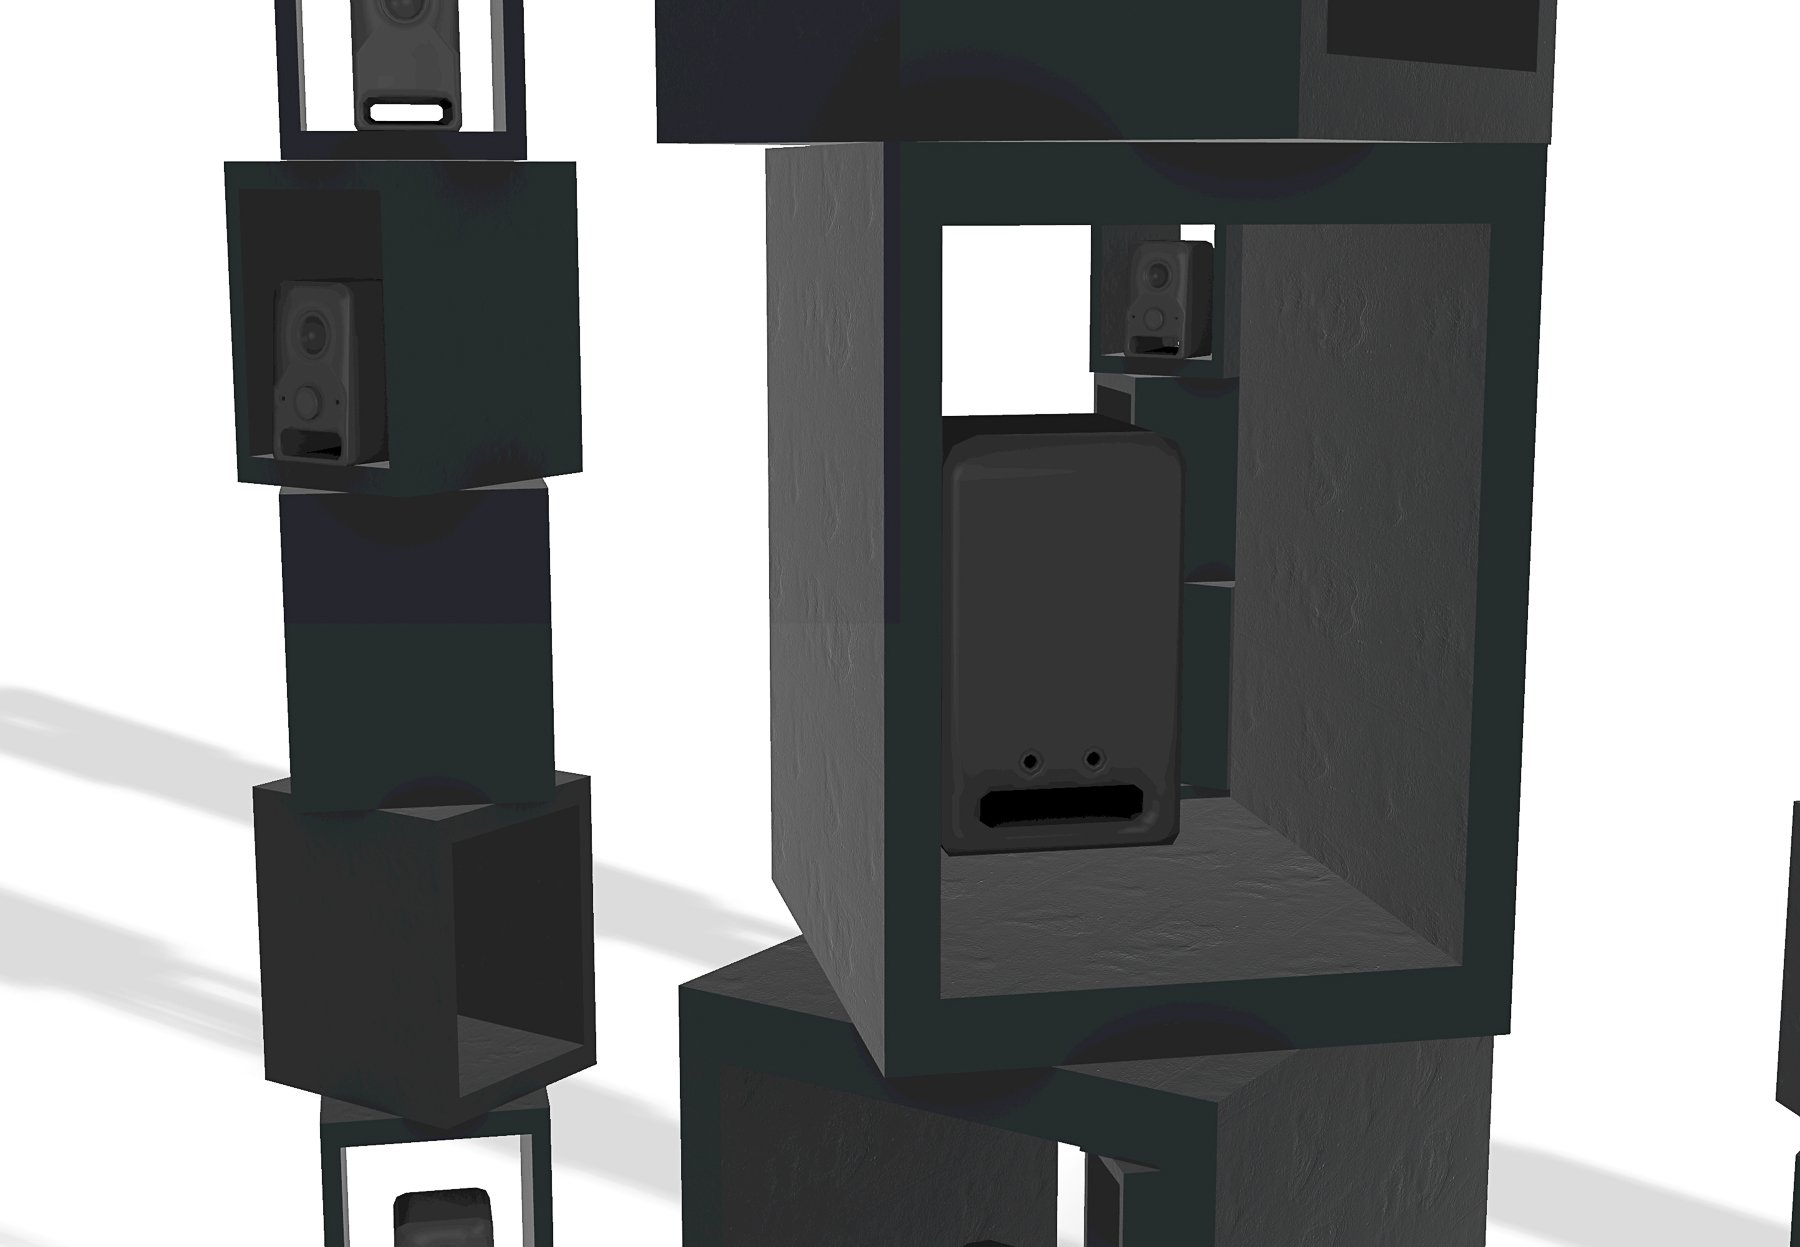 3d rendering of speaker towers, detail